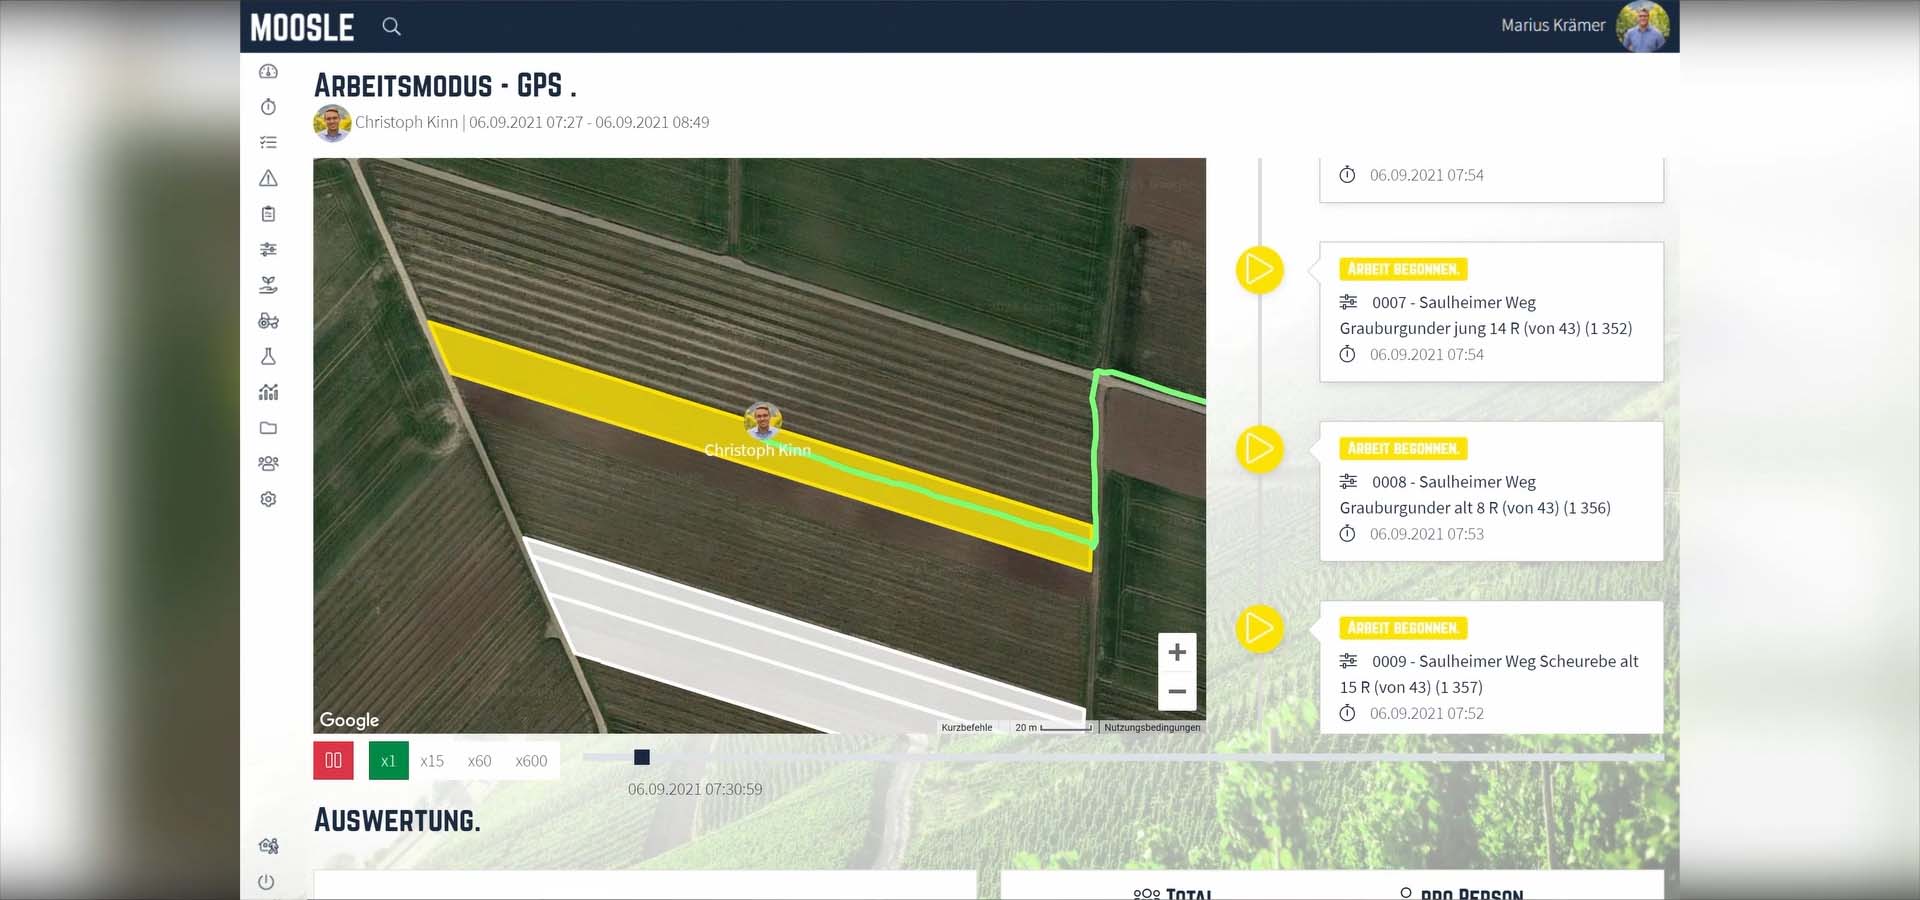 Moosle App Screencast zeigt Arbeitsmodus mit GPS Koordinaten an